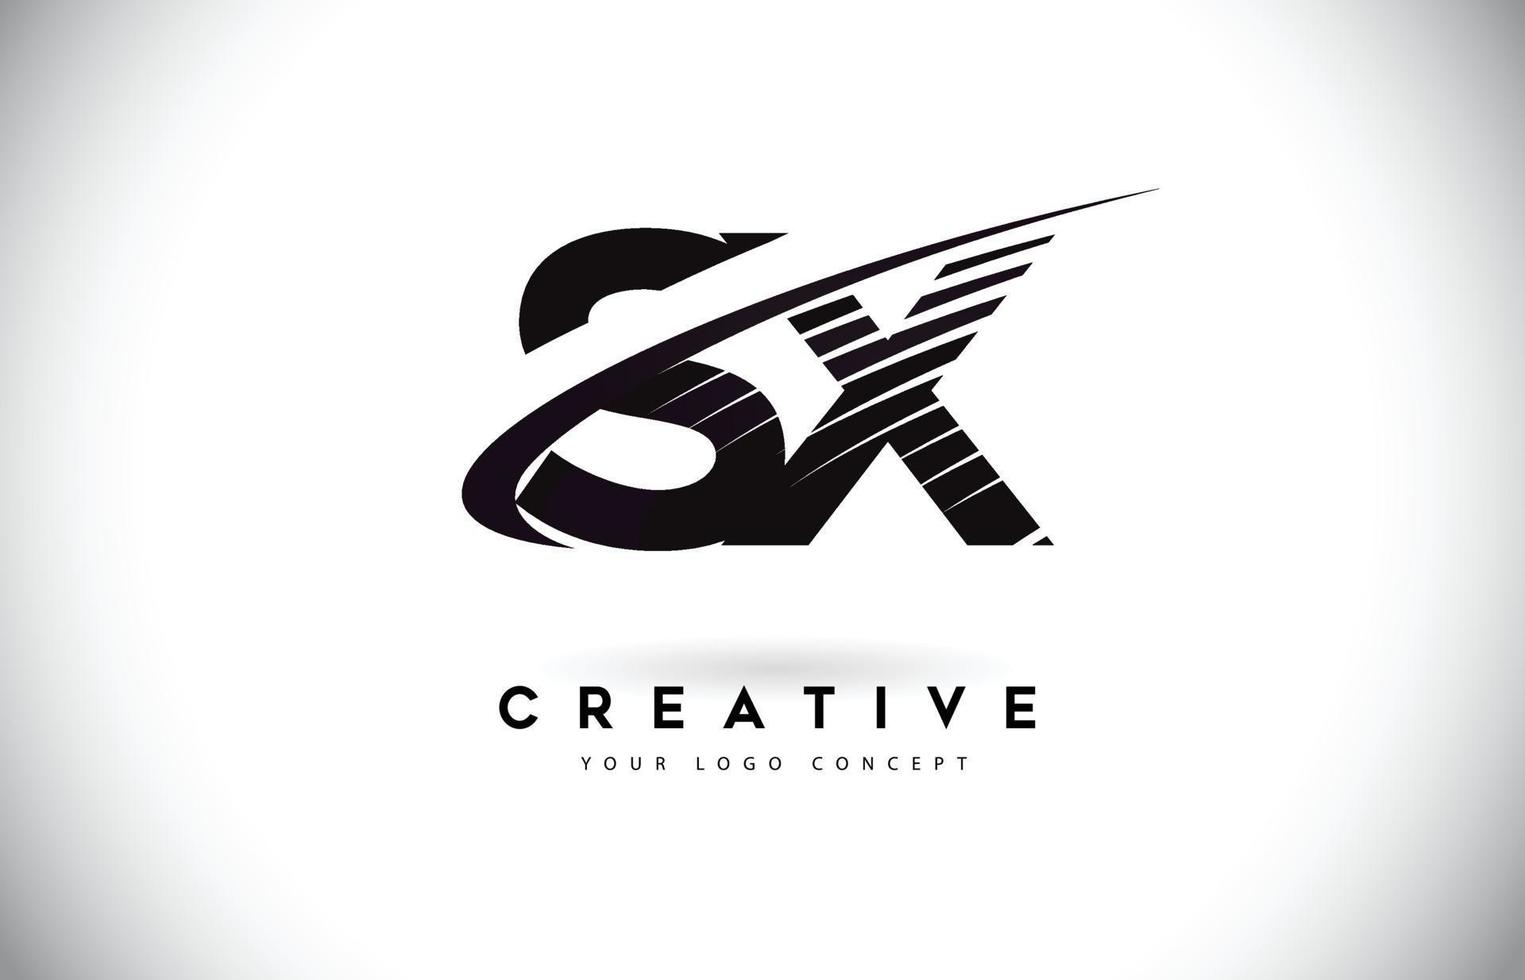 sx sx brief Logo-Design mit Swoosh und schwarzen Linien. vektor